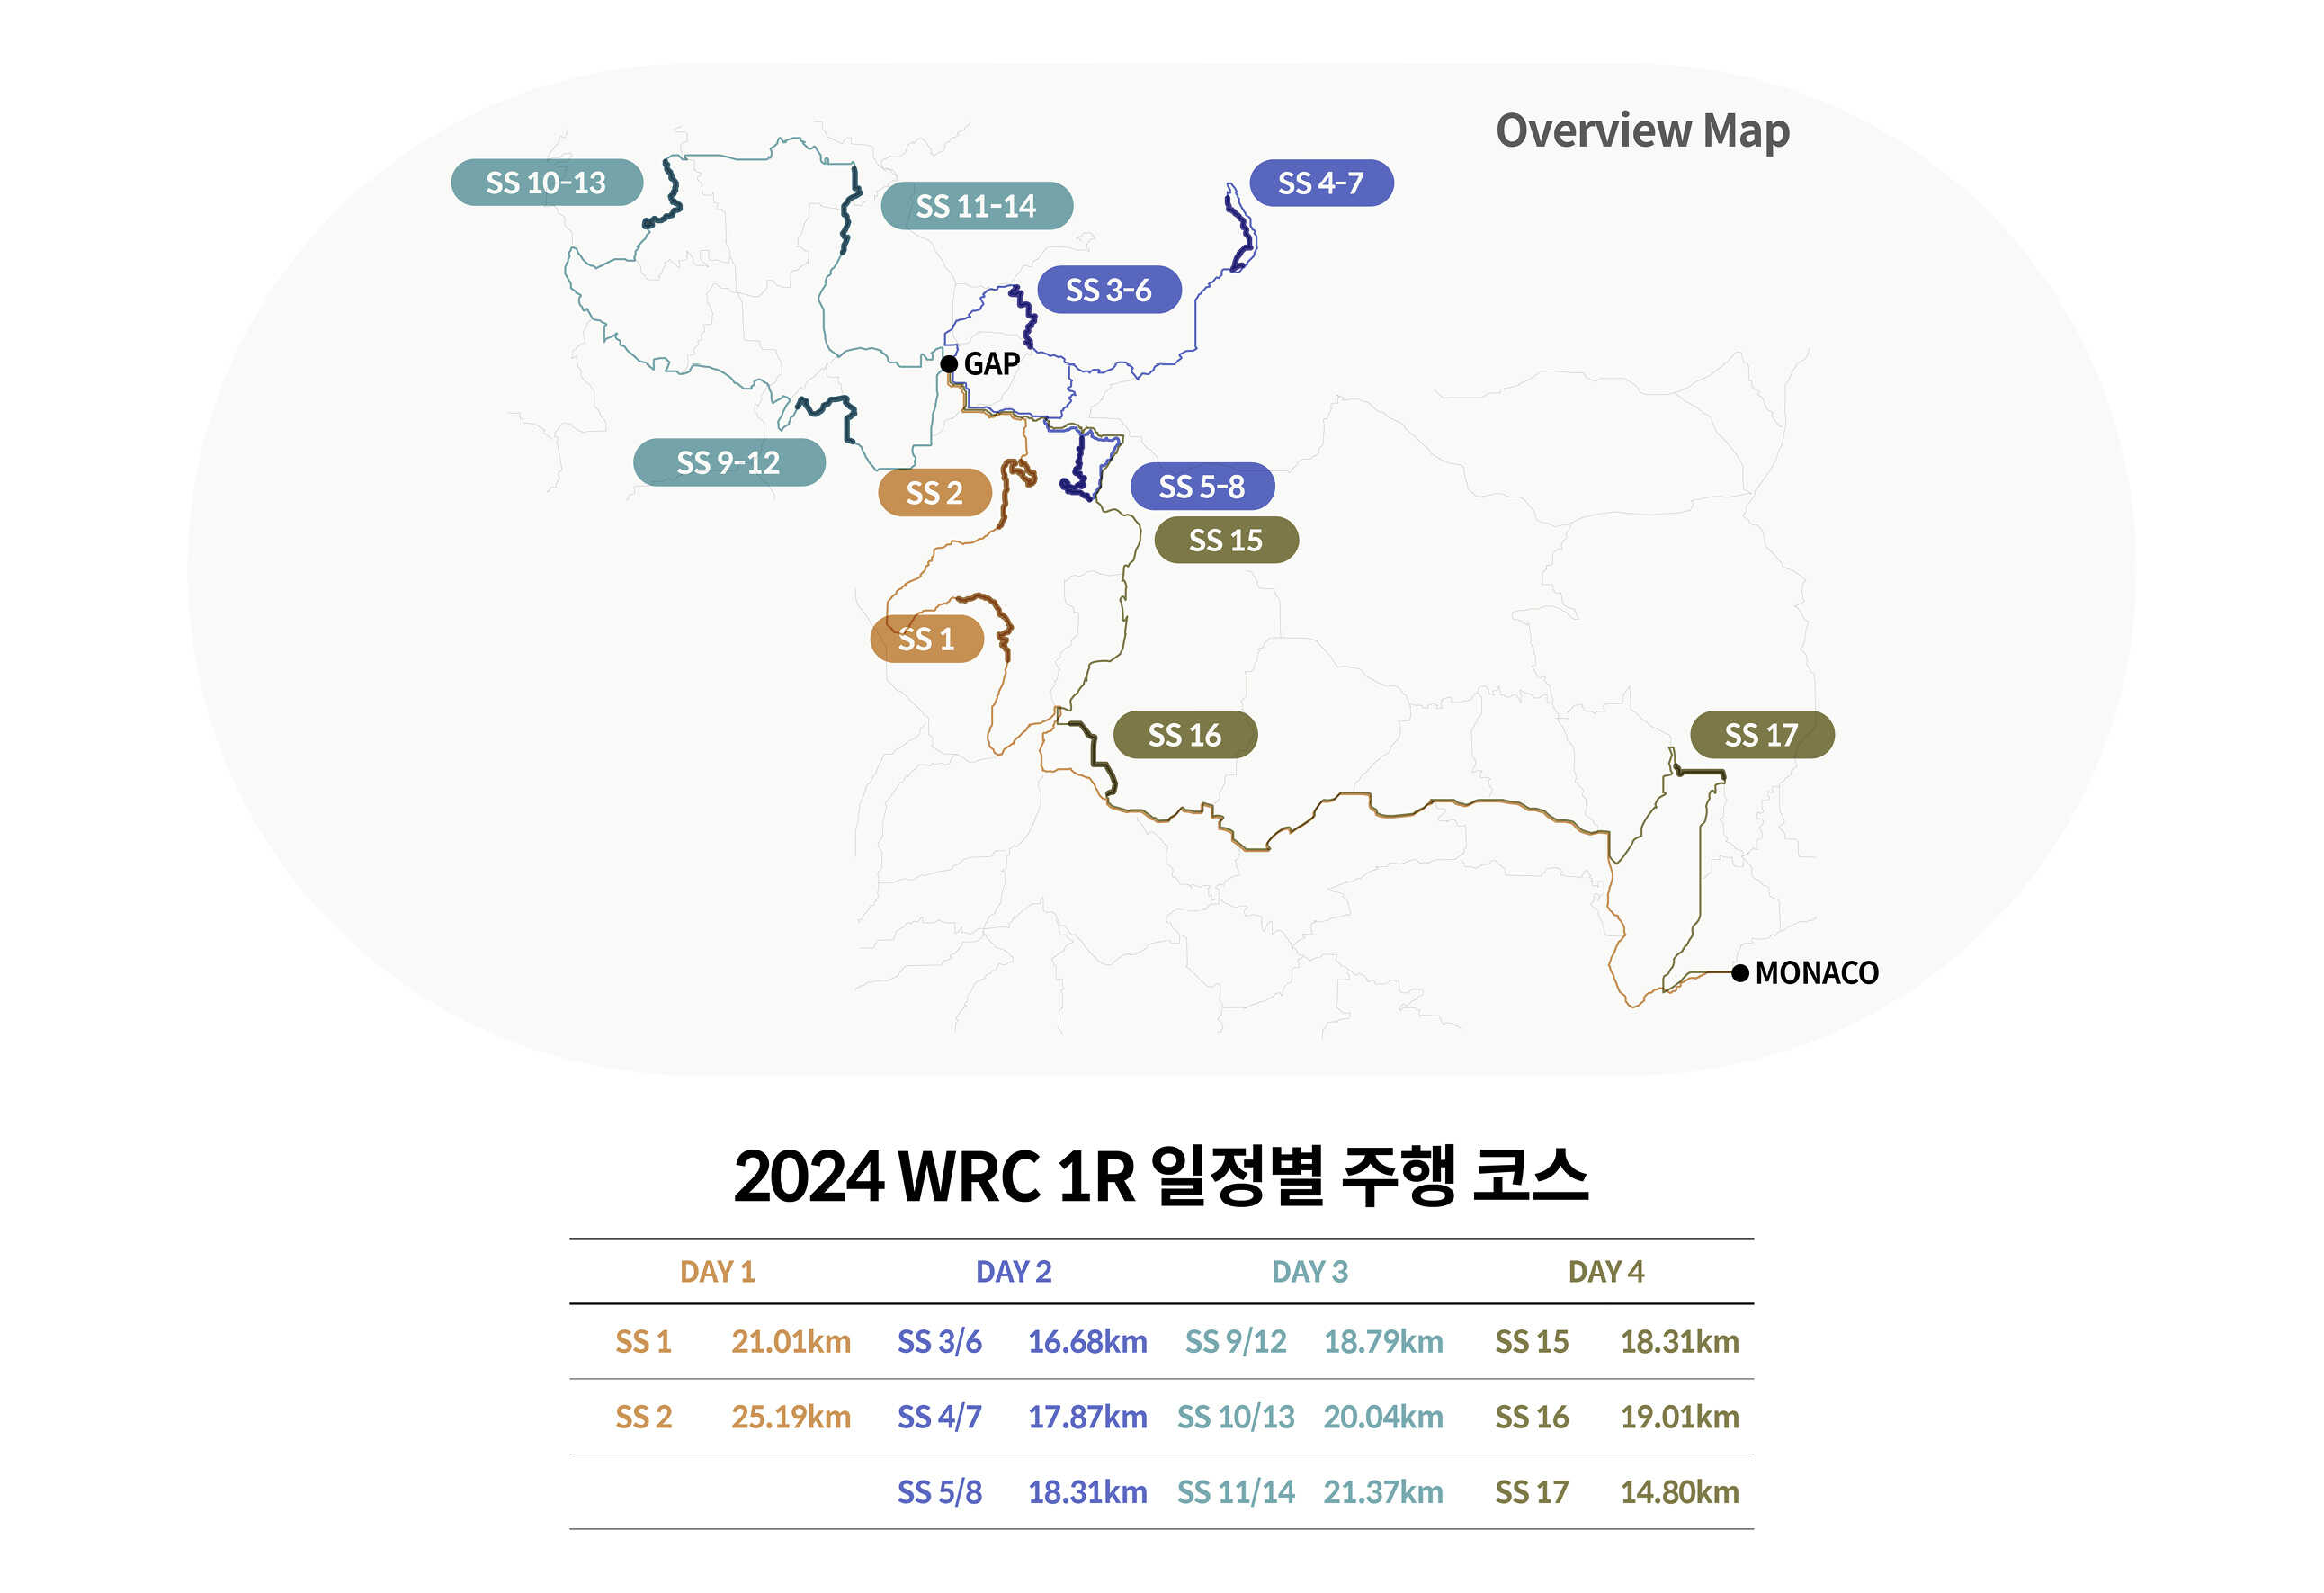 2024 WRC 1라운드 일정별 주행 코스를 요약한 인포그래픽